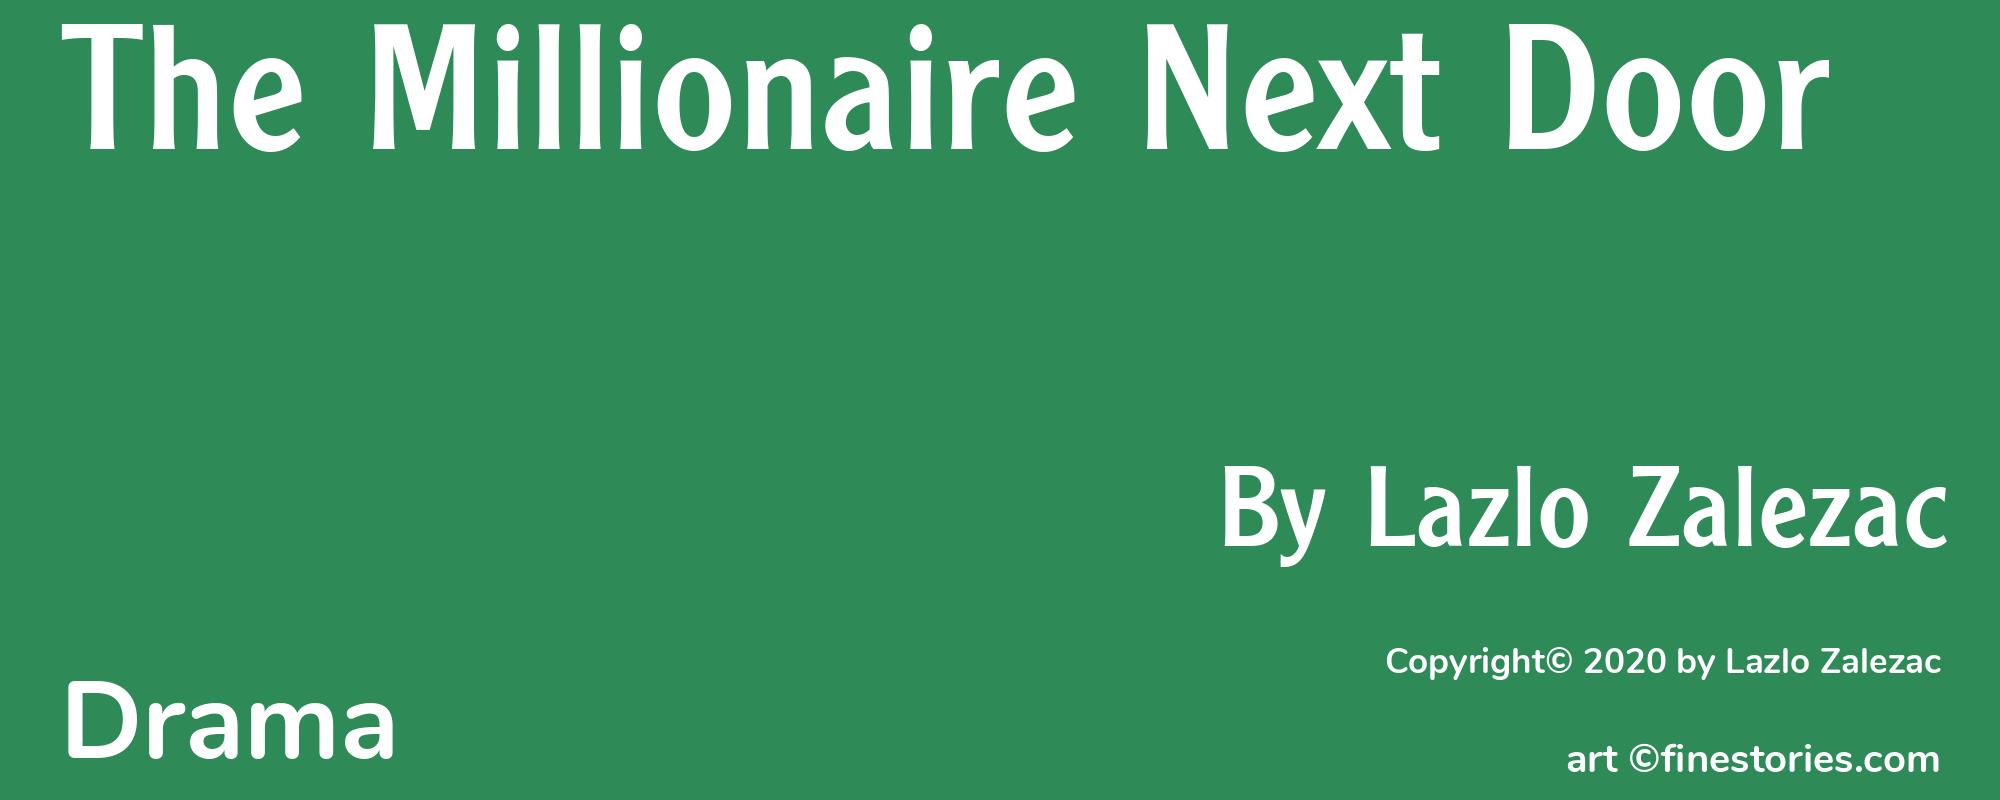 The Millionaire Next Door - Cover